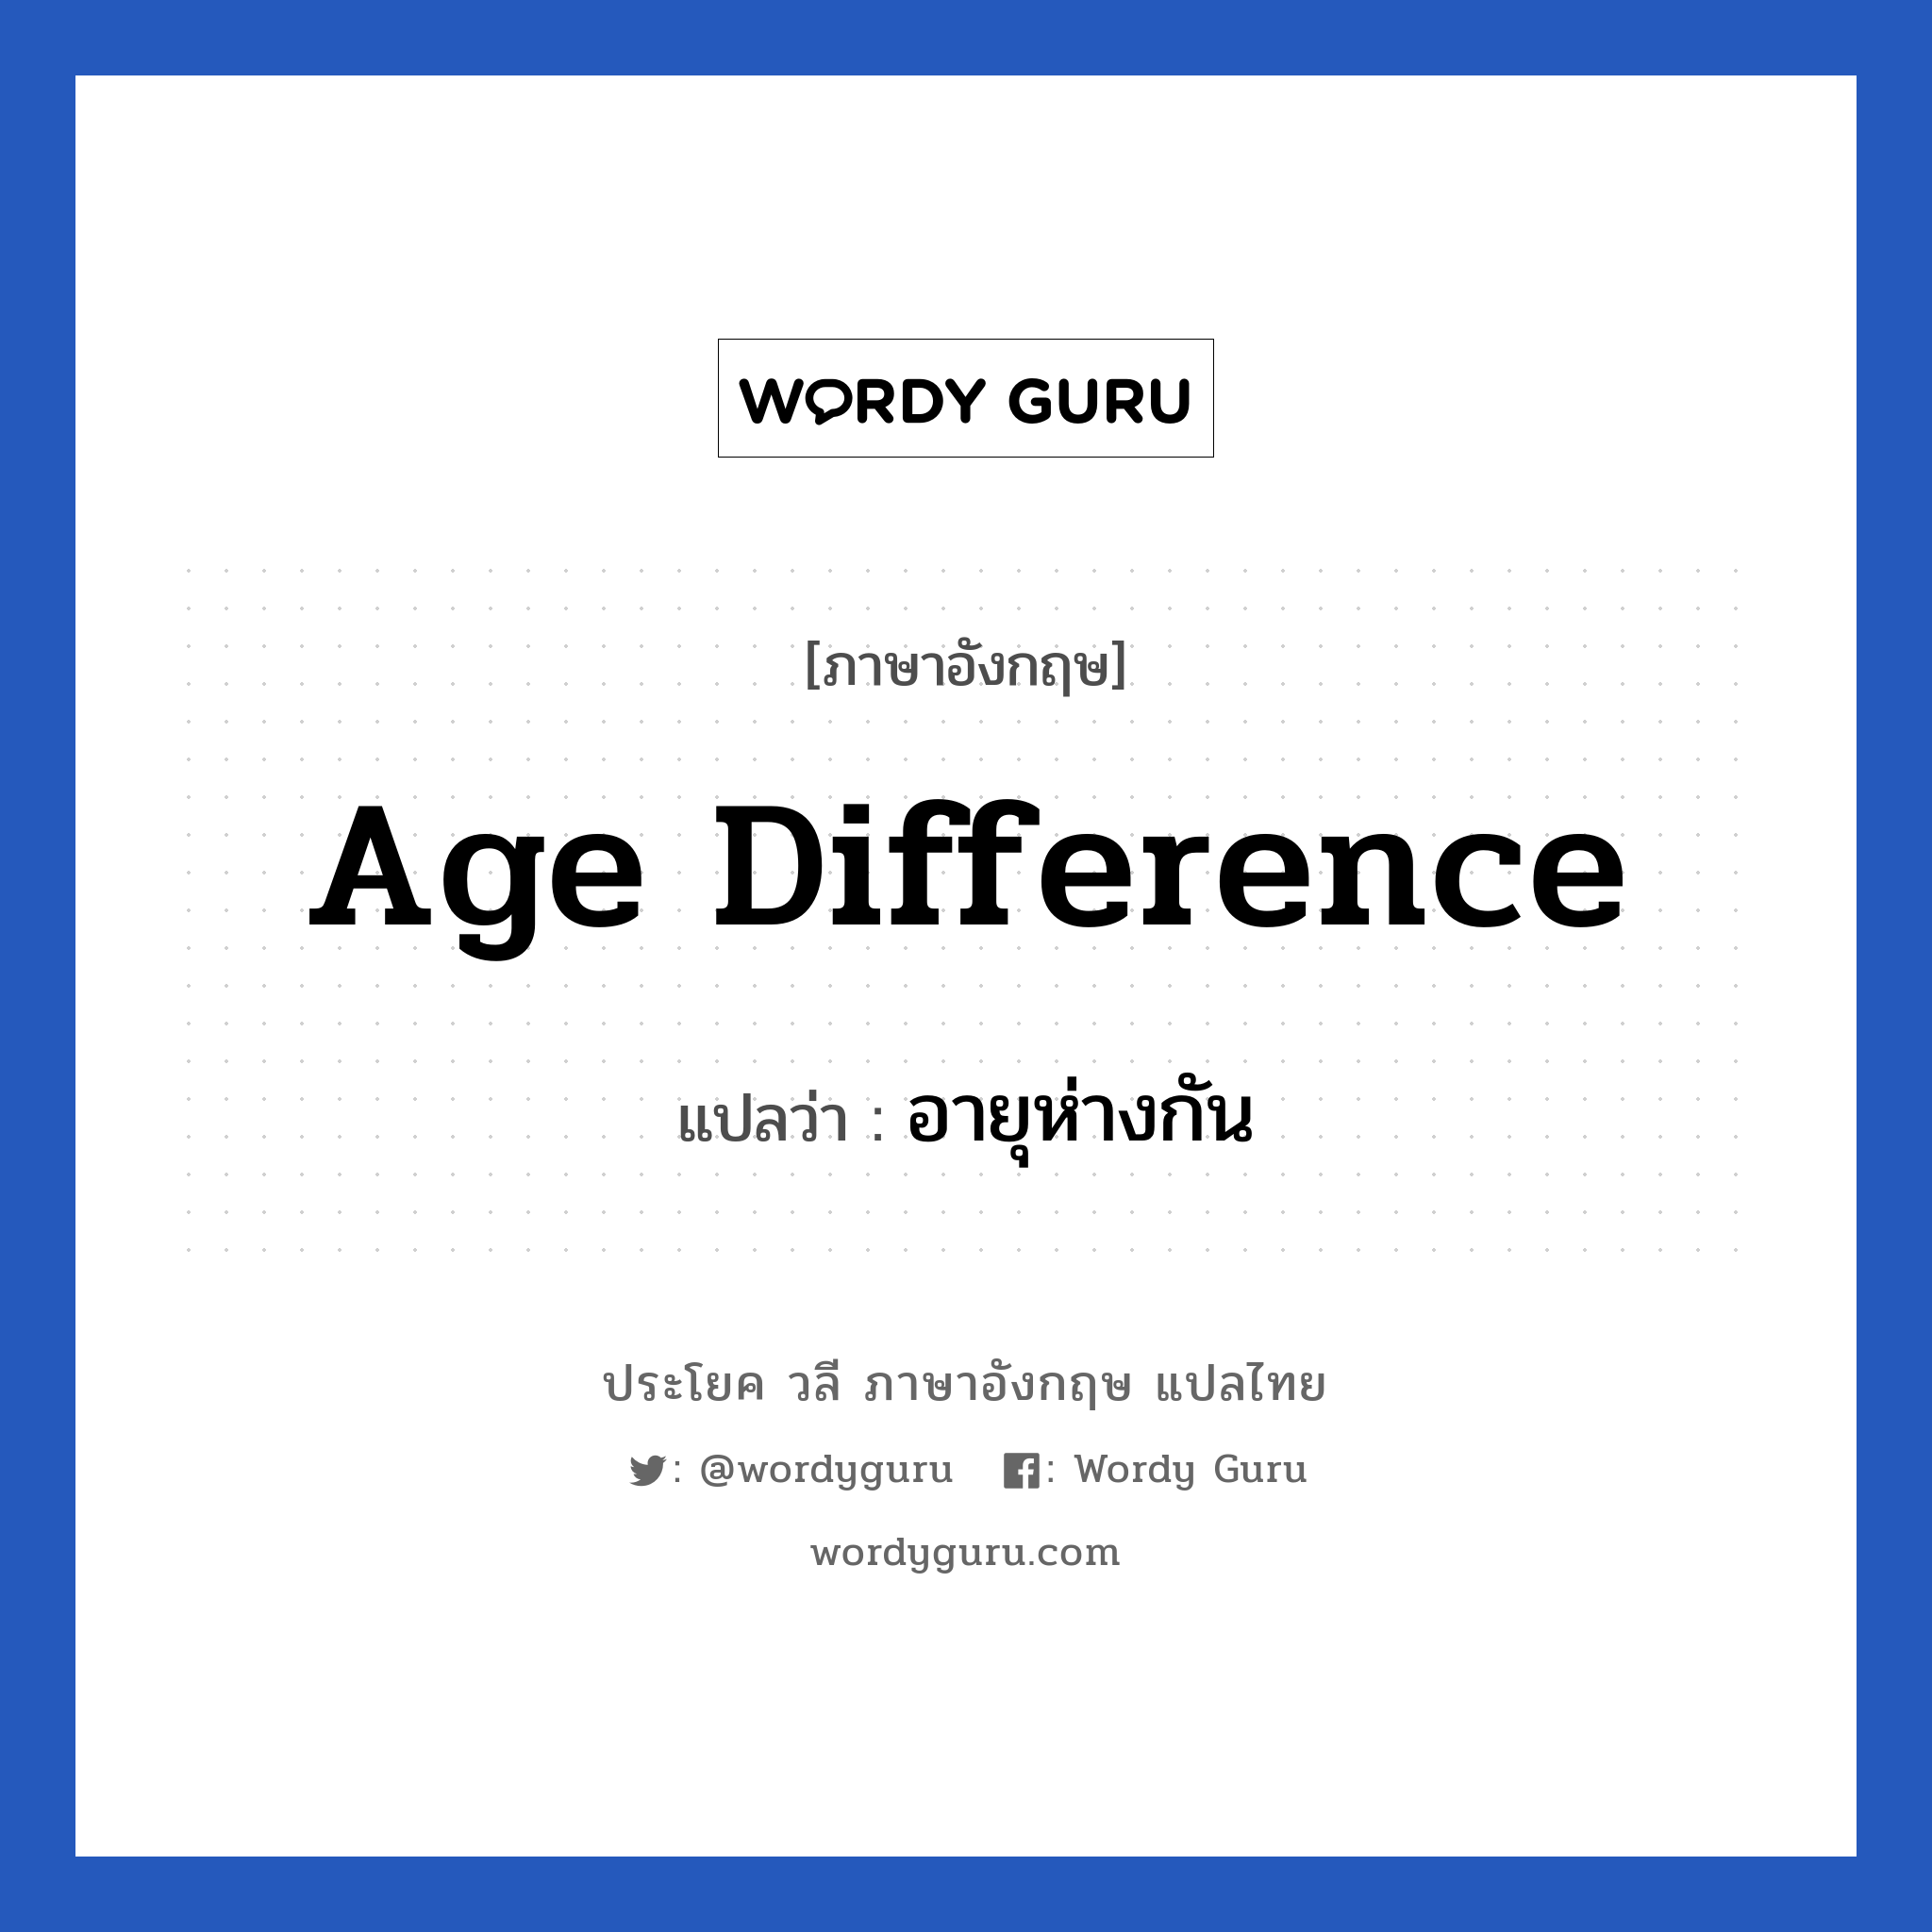 age difference แปลว่า?, วลีภาษาอังกฤษ age difference แปลว่า อายุห่างกัน